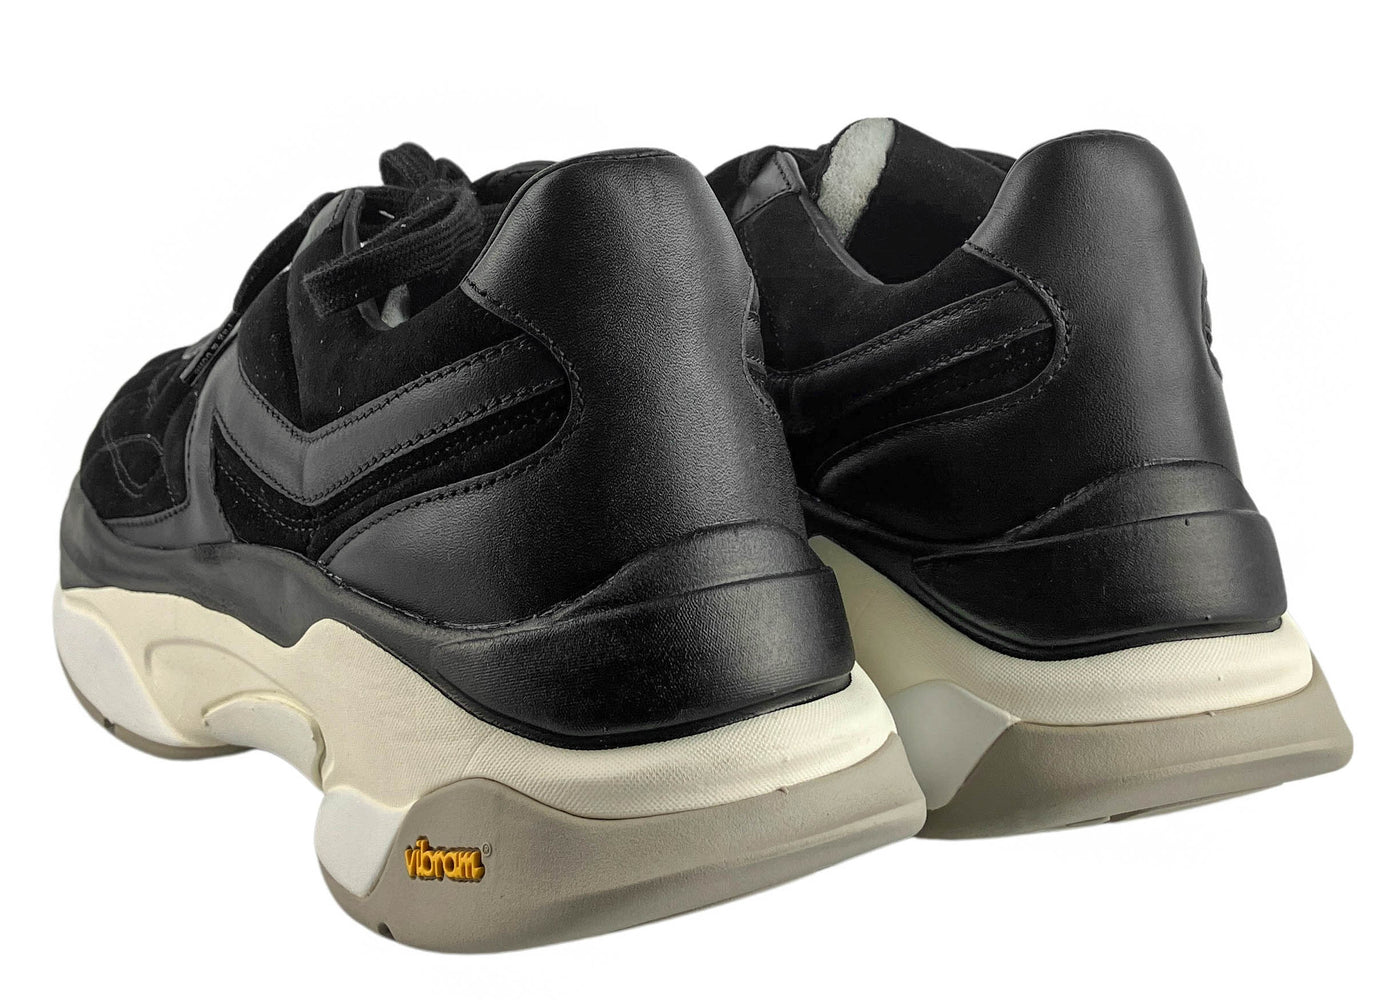 rag & bone Legacy Runner Sneakers in Black Suede - Discounts on Rag & Bone at UAL